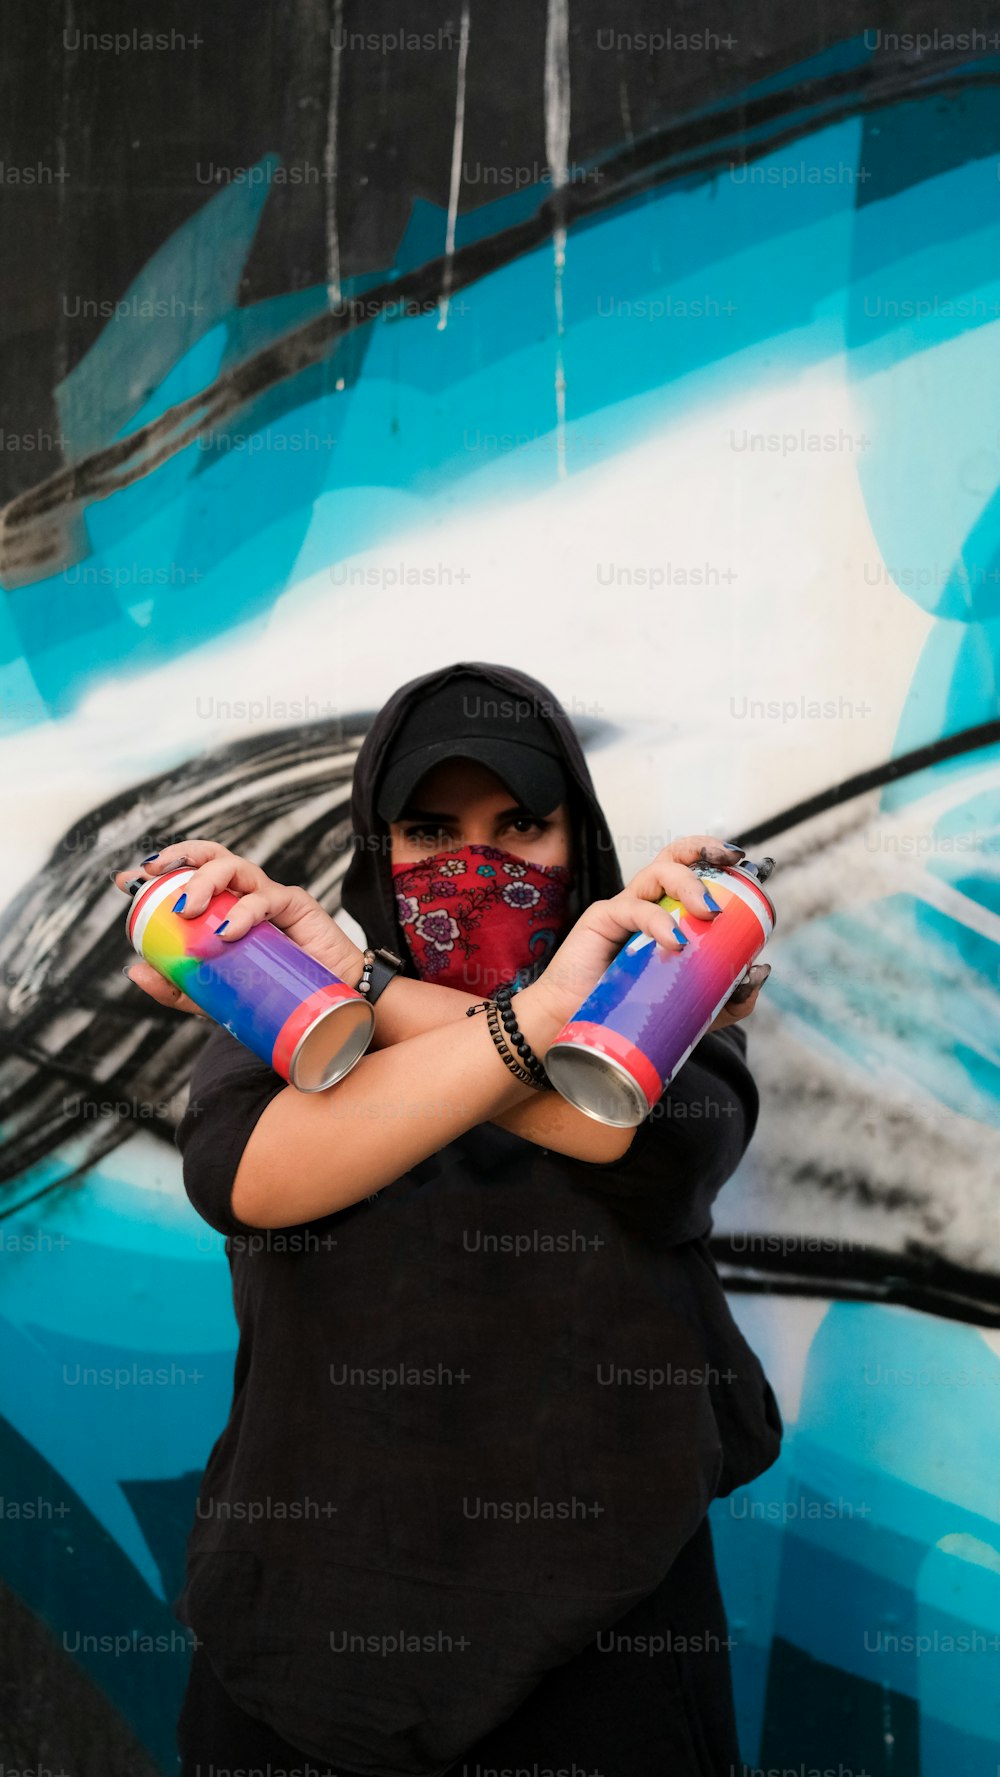 Una mujer con una máscara facial y sosteniendo dos latas de pintura